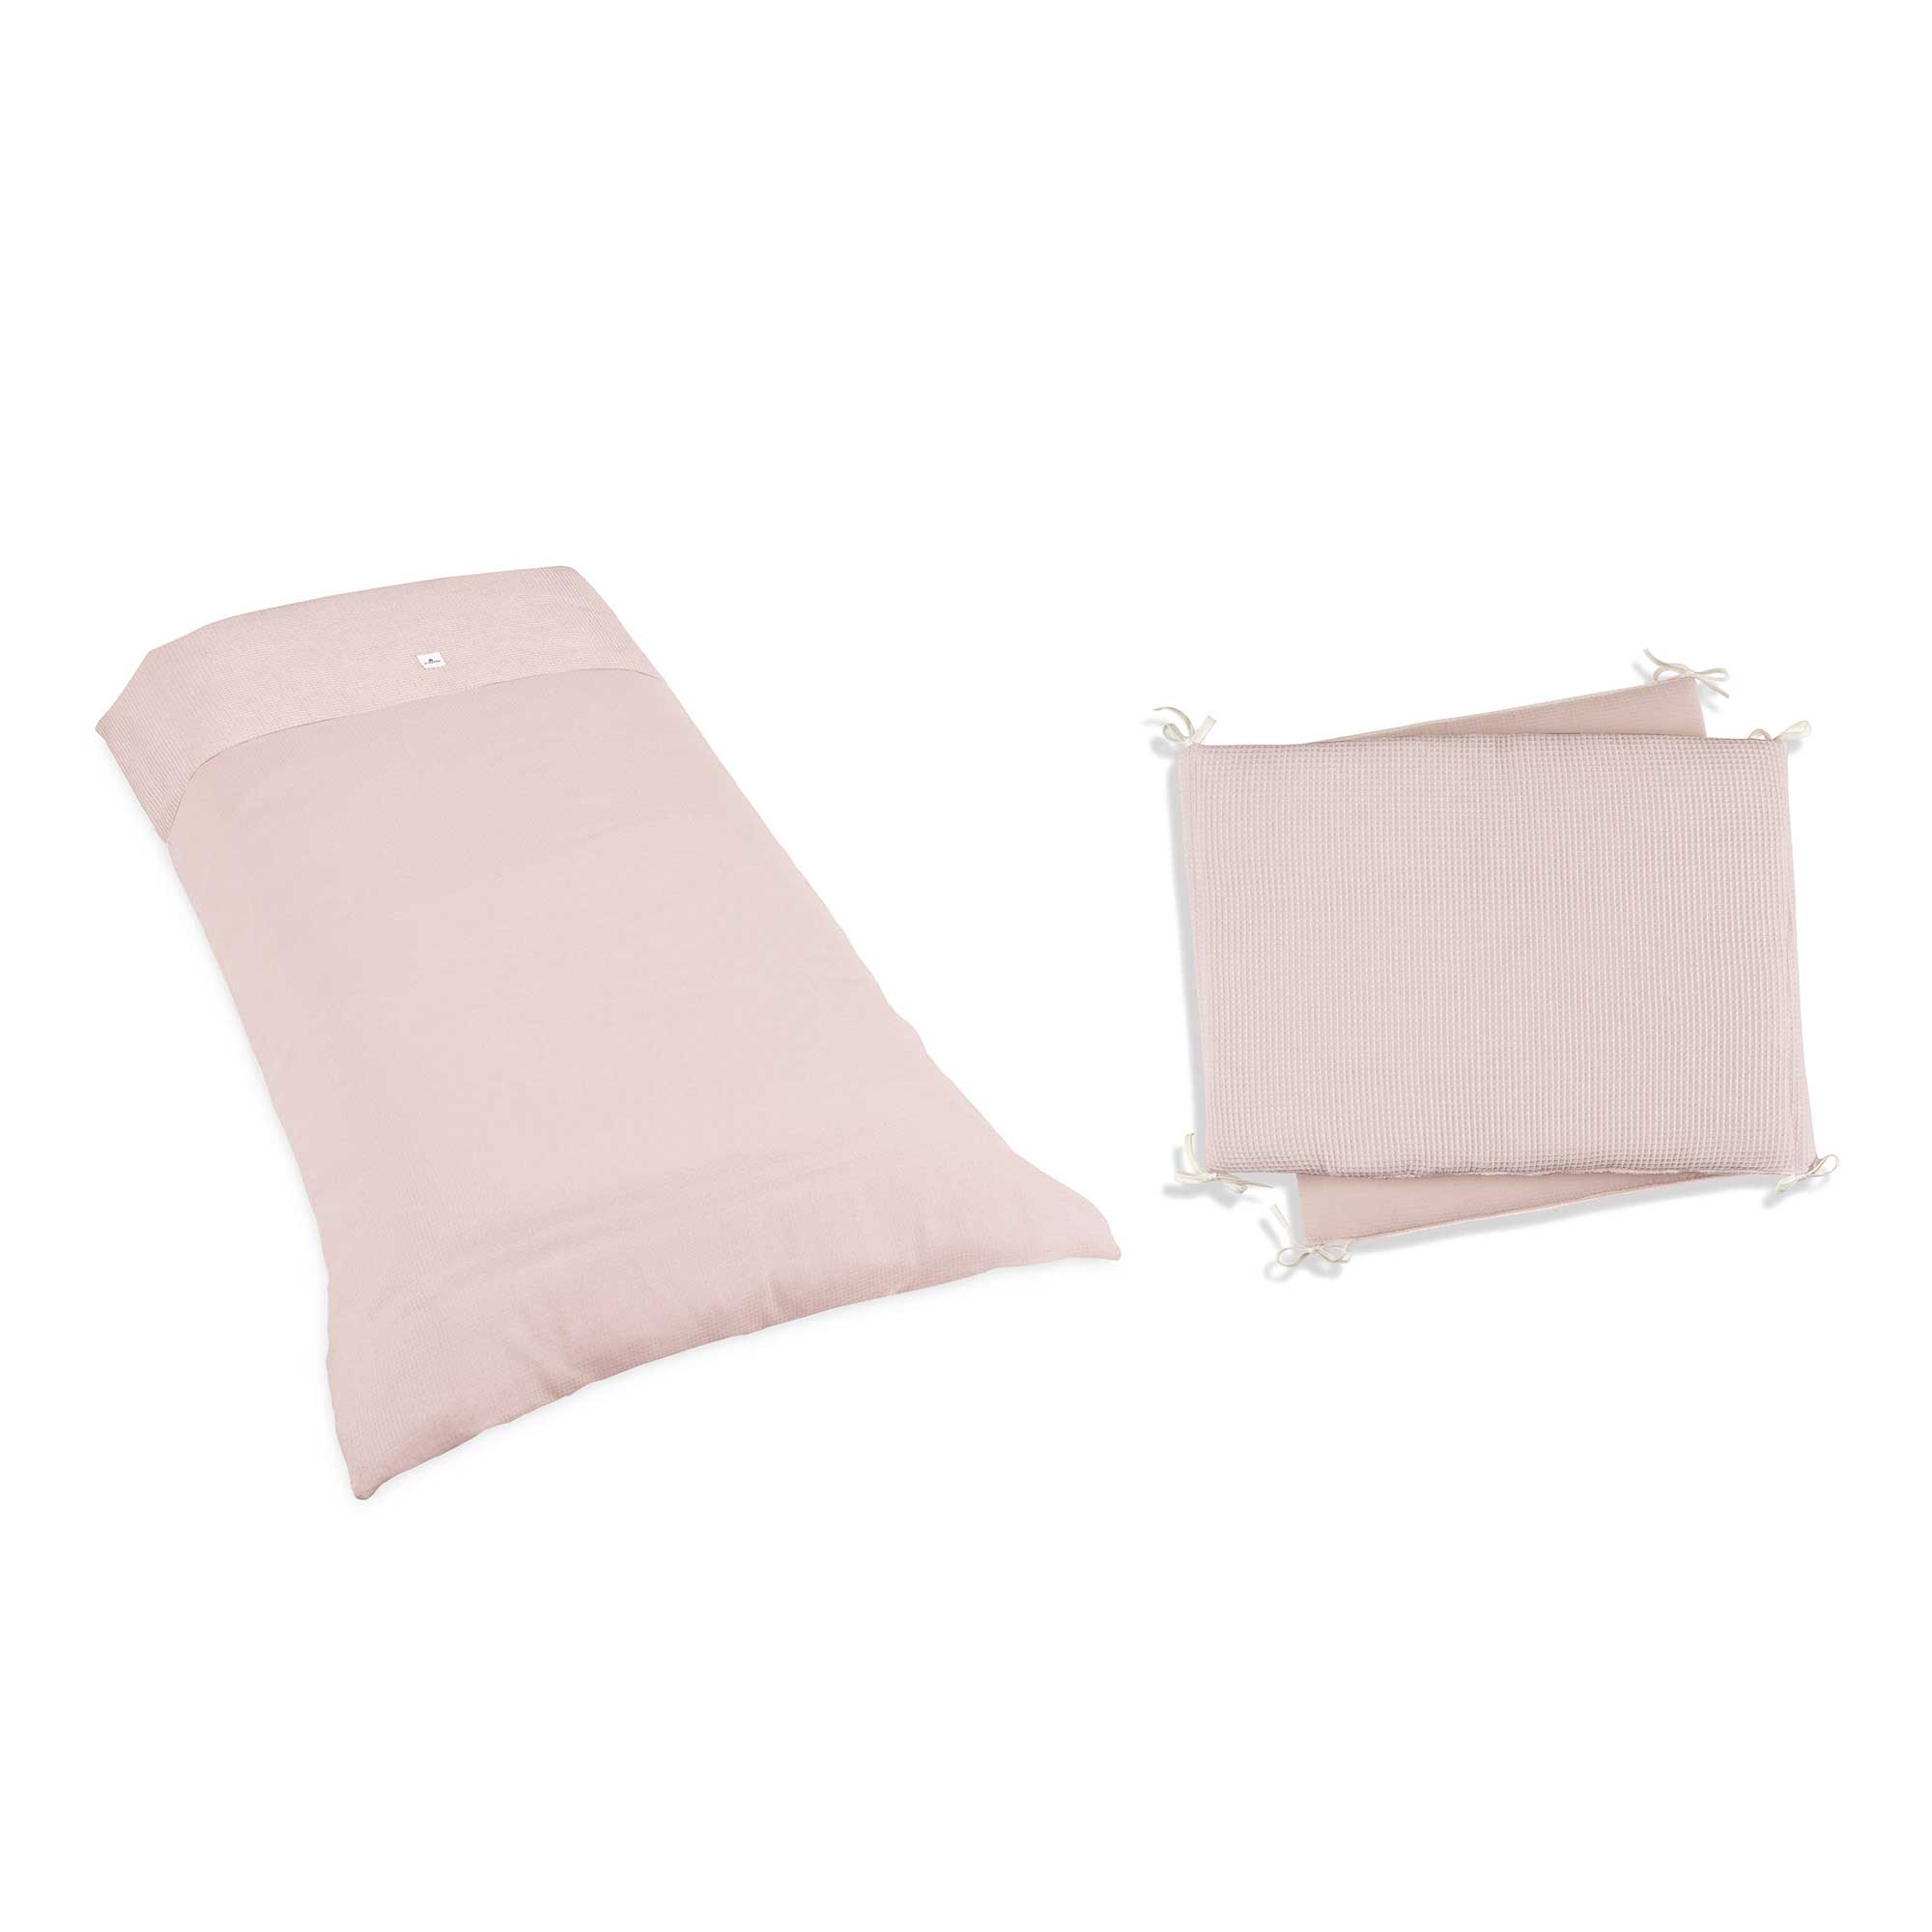 Rulo Protector de cama - Powder Pink